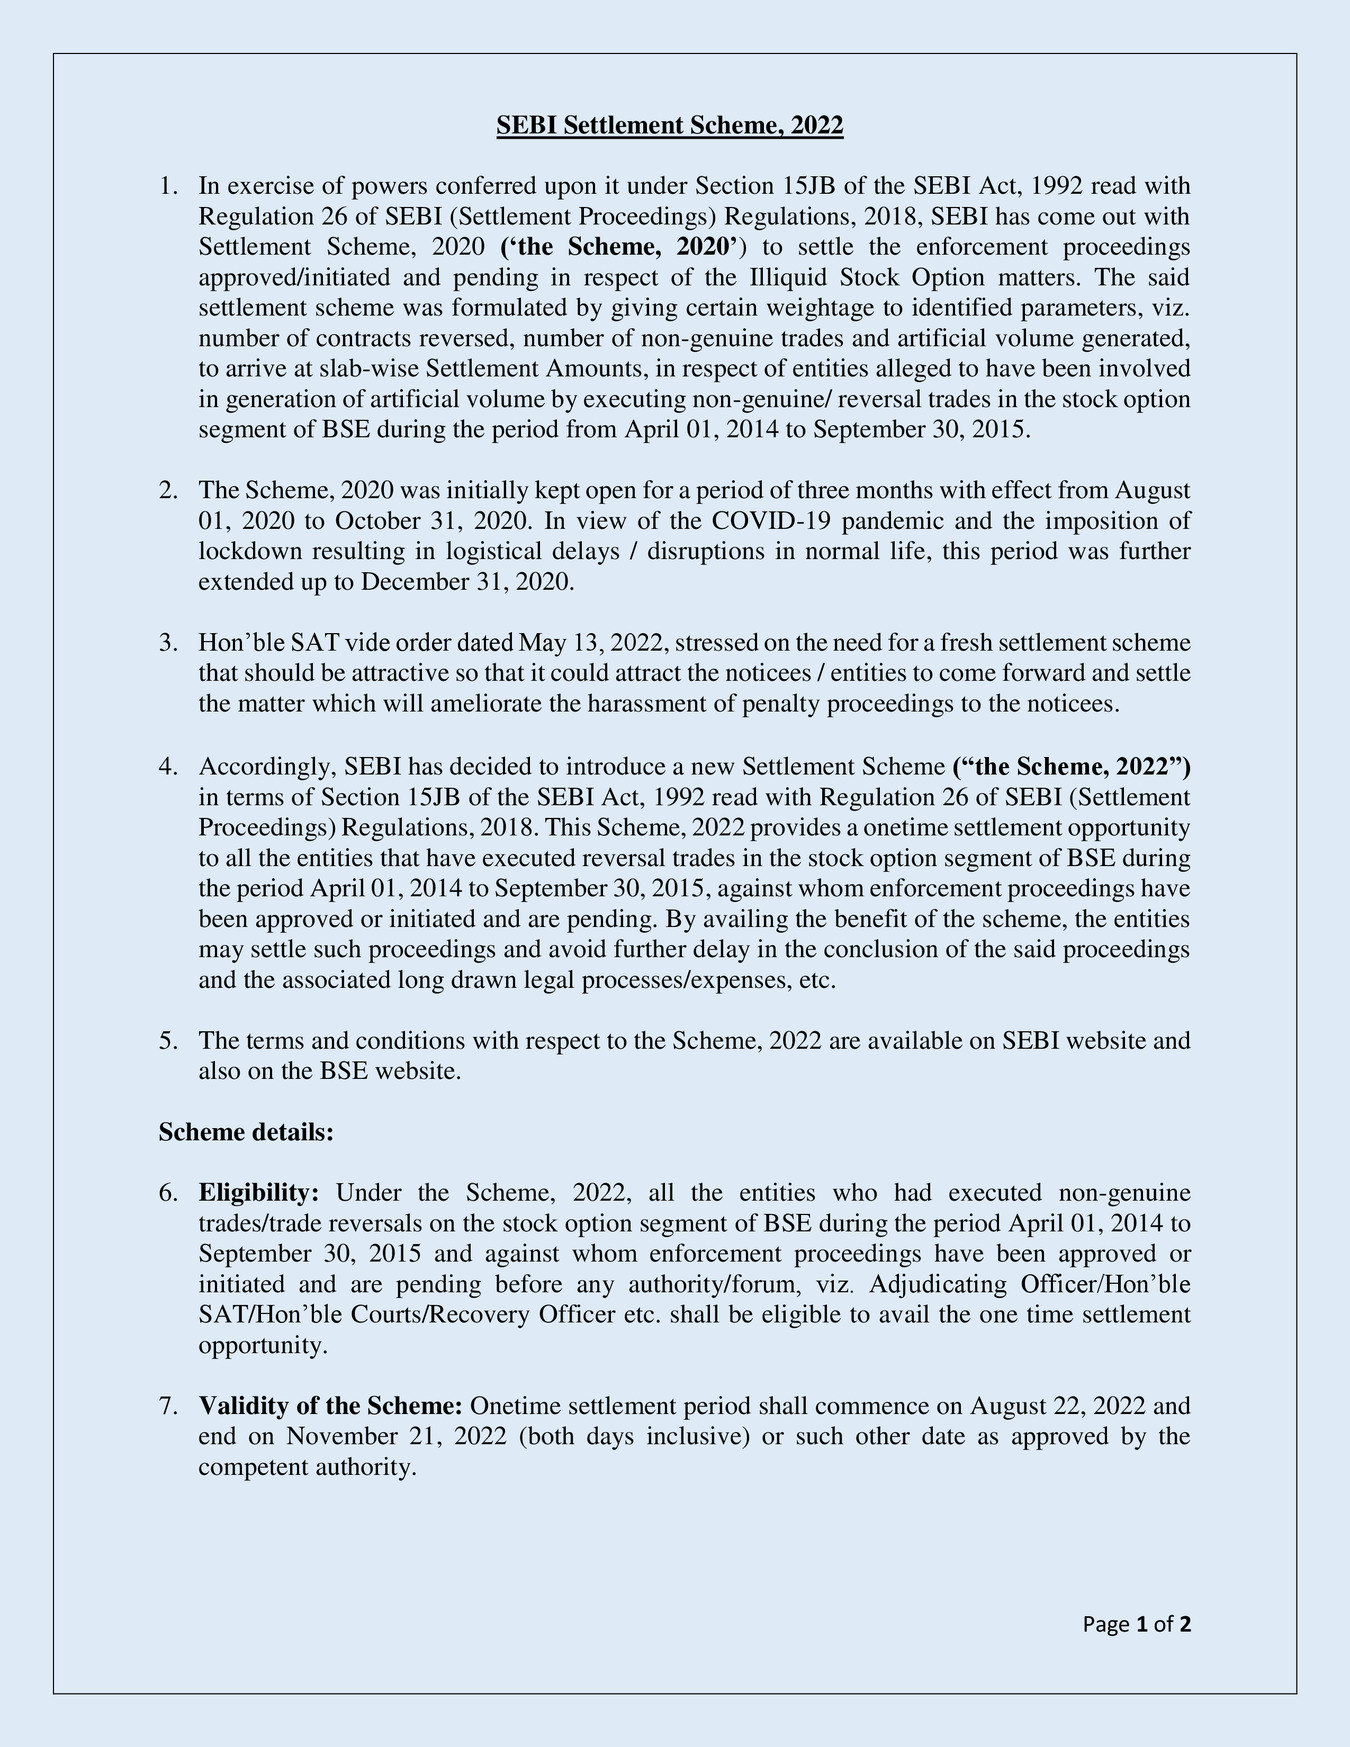 SEBI Settlement Scheme 2022 Guidelines PDF